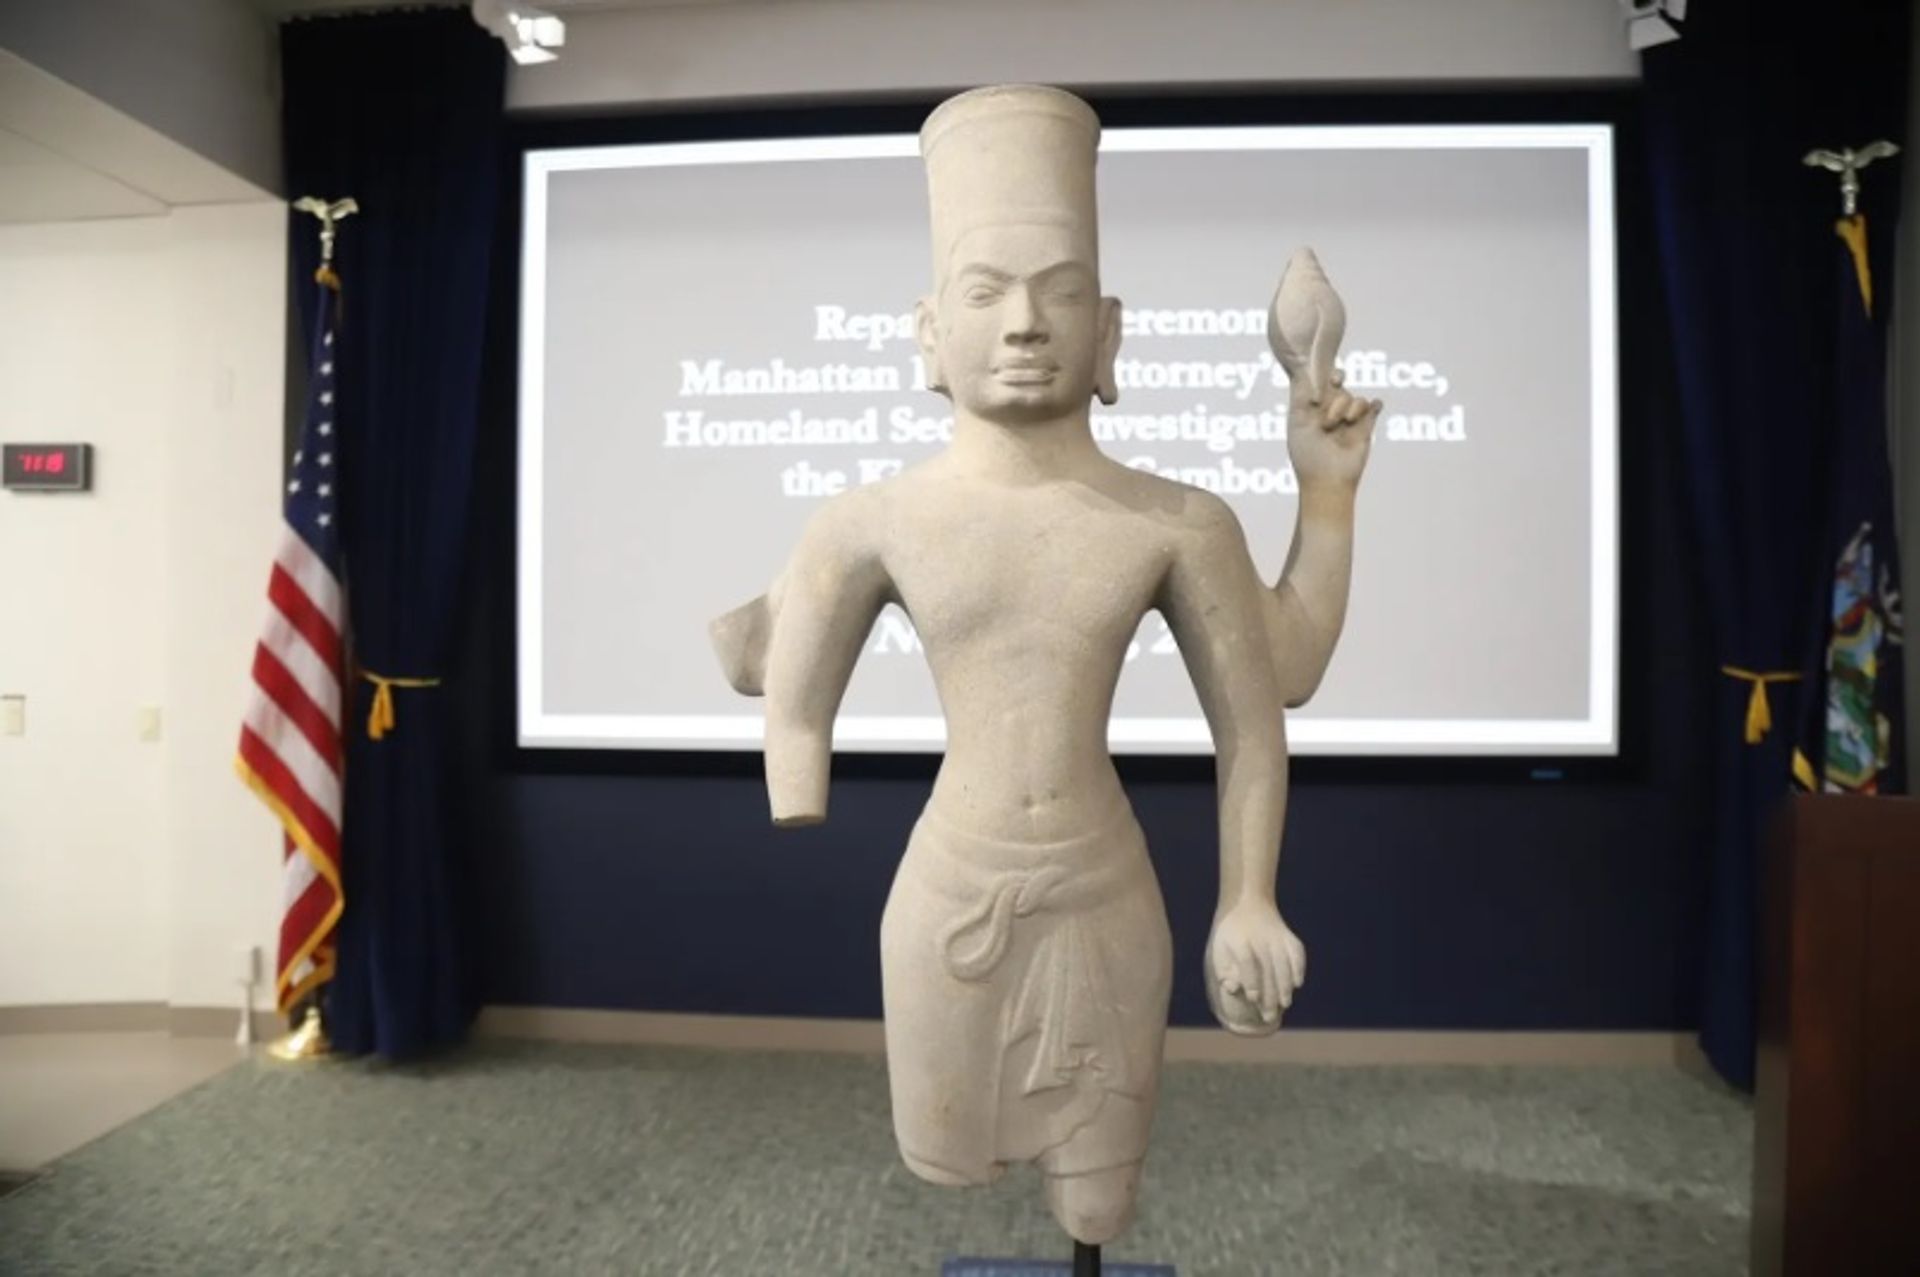 הפסל-Standing Sandstone Vishnu מוצג במהלך טקס החזרה שנערך ב-2 בנובמבר בשגרירות קמבודיה, בוושינגטון הבירה

התמונה באדיבות השגרירות המלכותית של קמבודיה בארצות הברית, דרך הפייסבוק